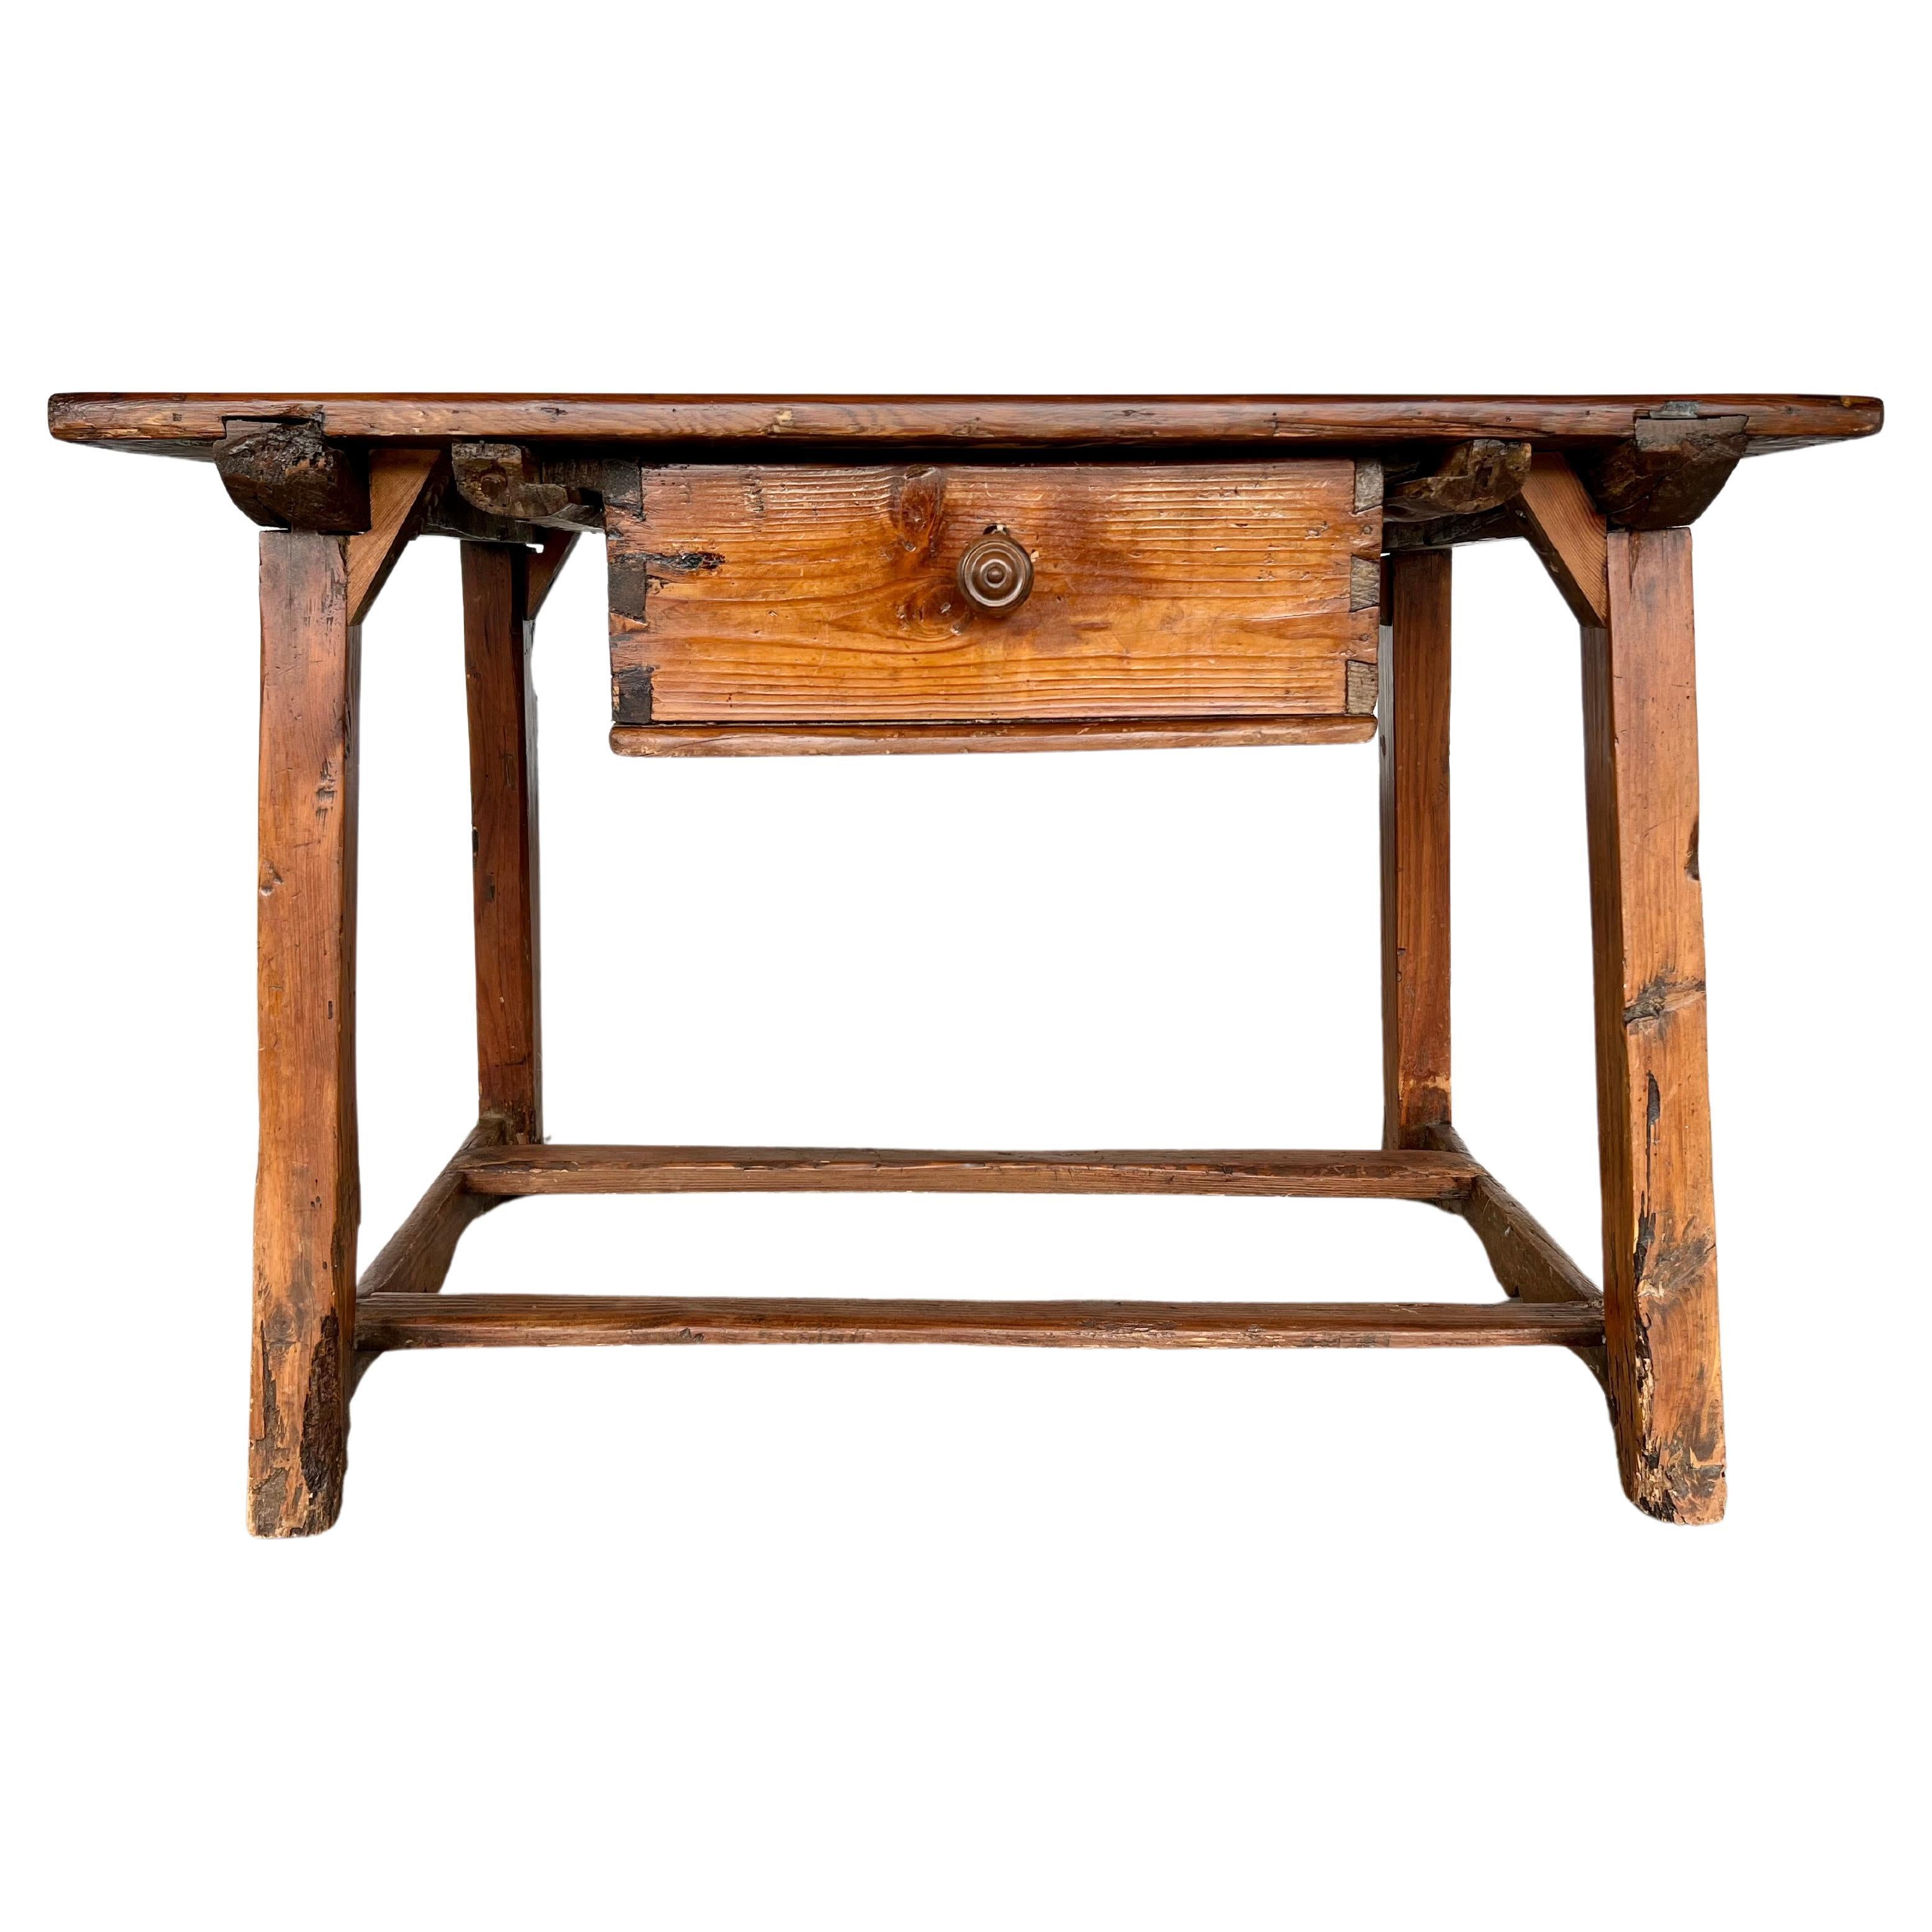 Ancienne table de travail ou table de cuisine espagnole rustique du 17e siècle avec un seul tiroir en vente